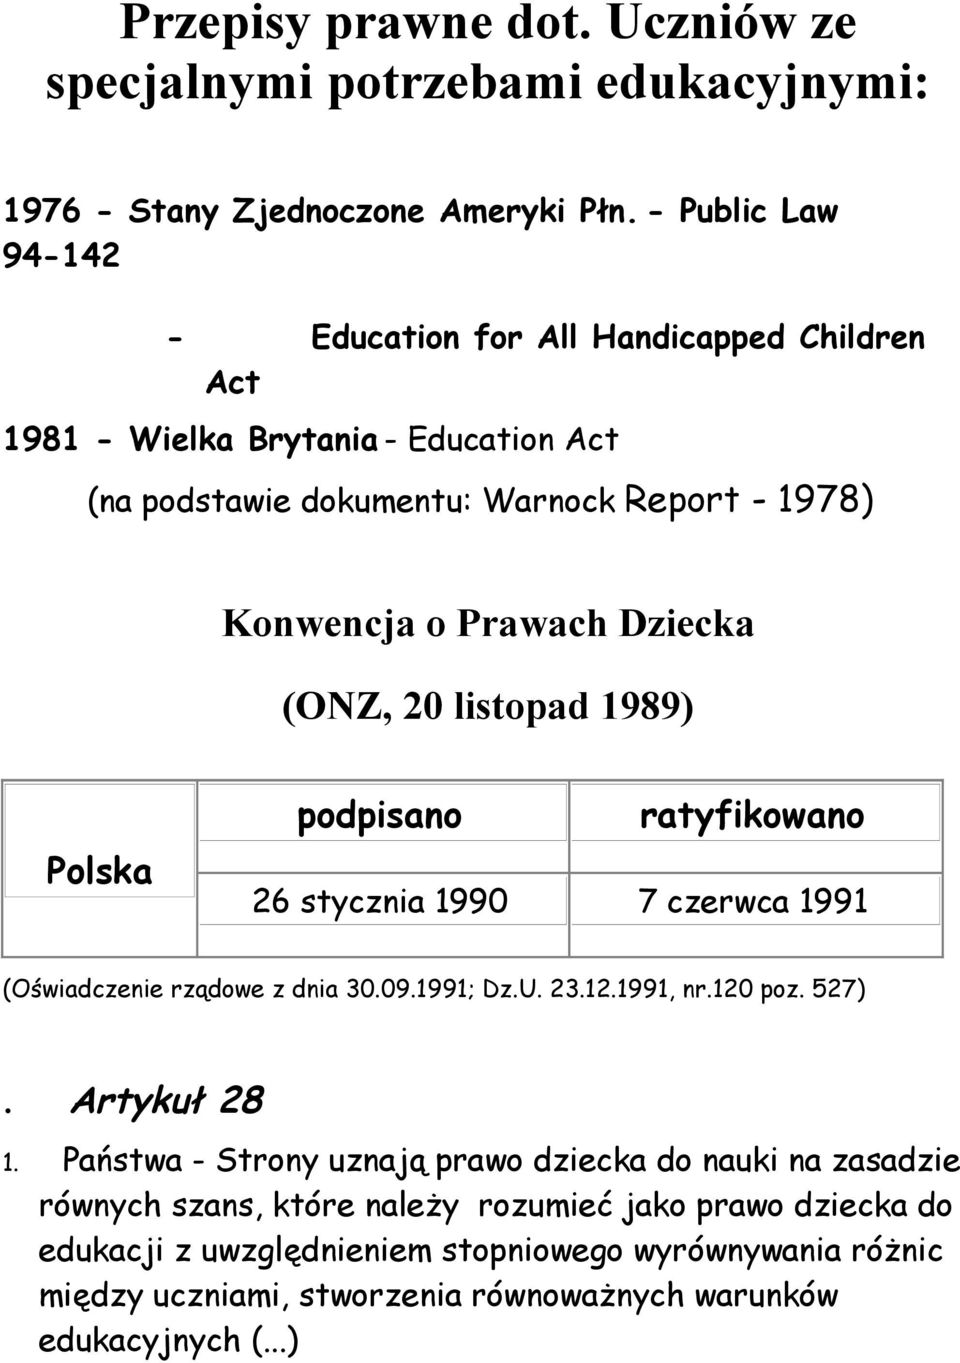 Dziecka (ONZ, 20 listopad 1989) Polska podpisano ratyfikowano 26 stycznia 1990 7 czerwca 1991 (Oświadczenie rządowe z dnia 30.09.1991; Dz.U. 23.12.1991, nr.120 poz. 527).